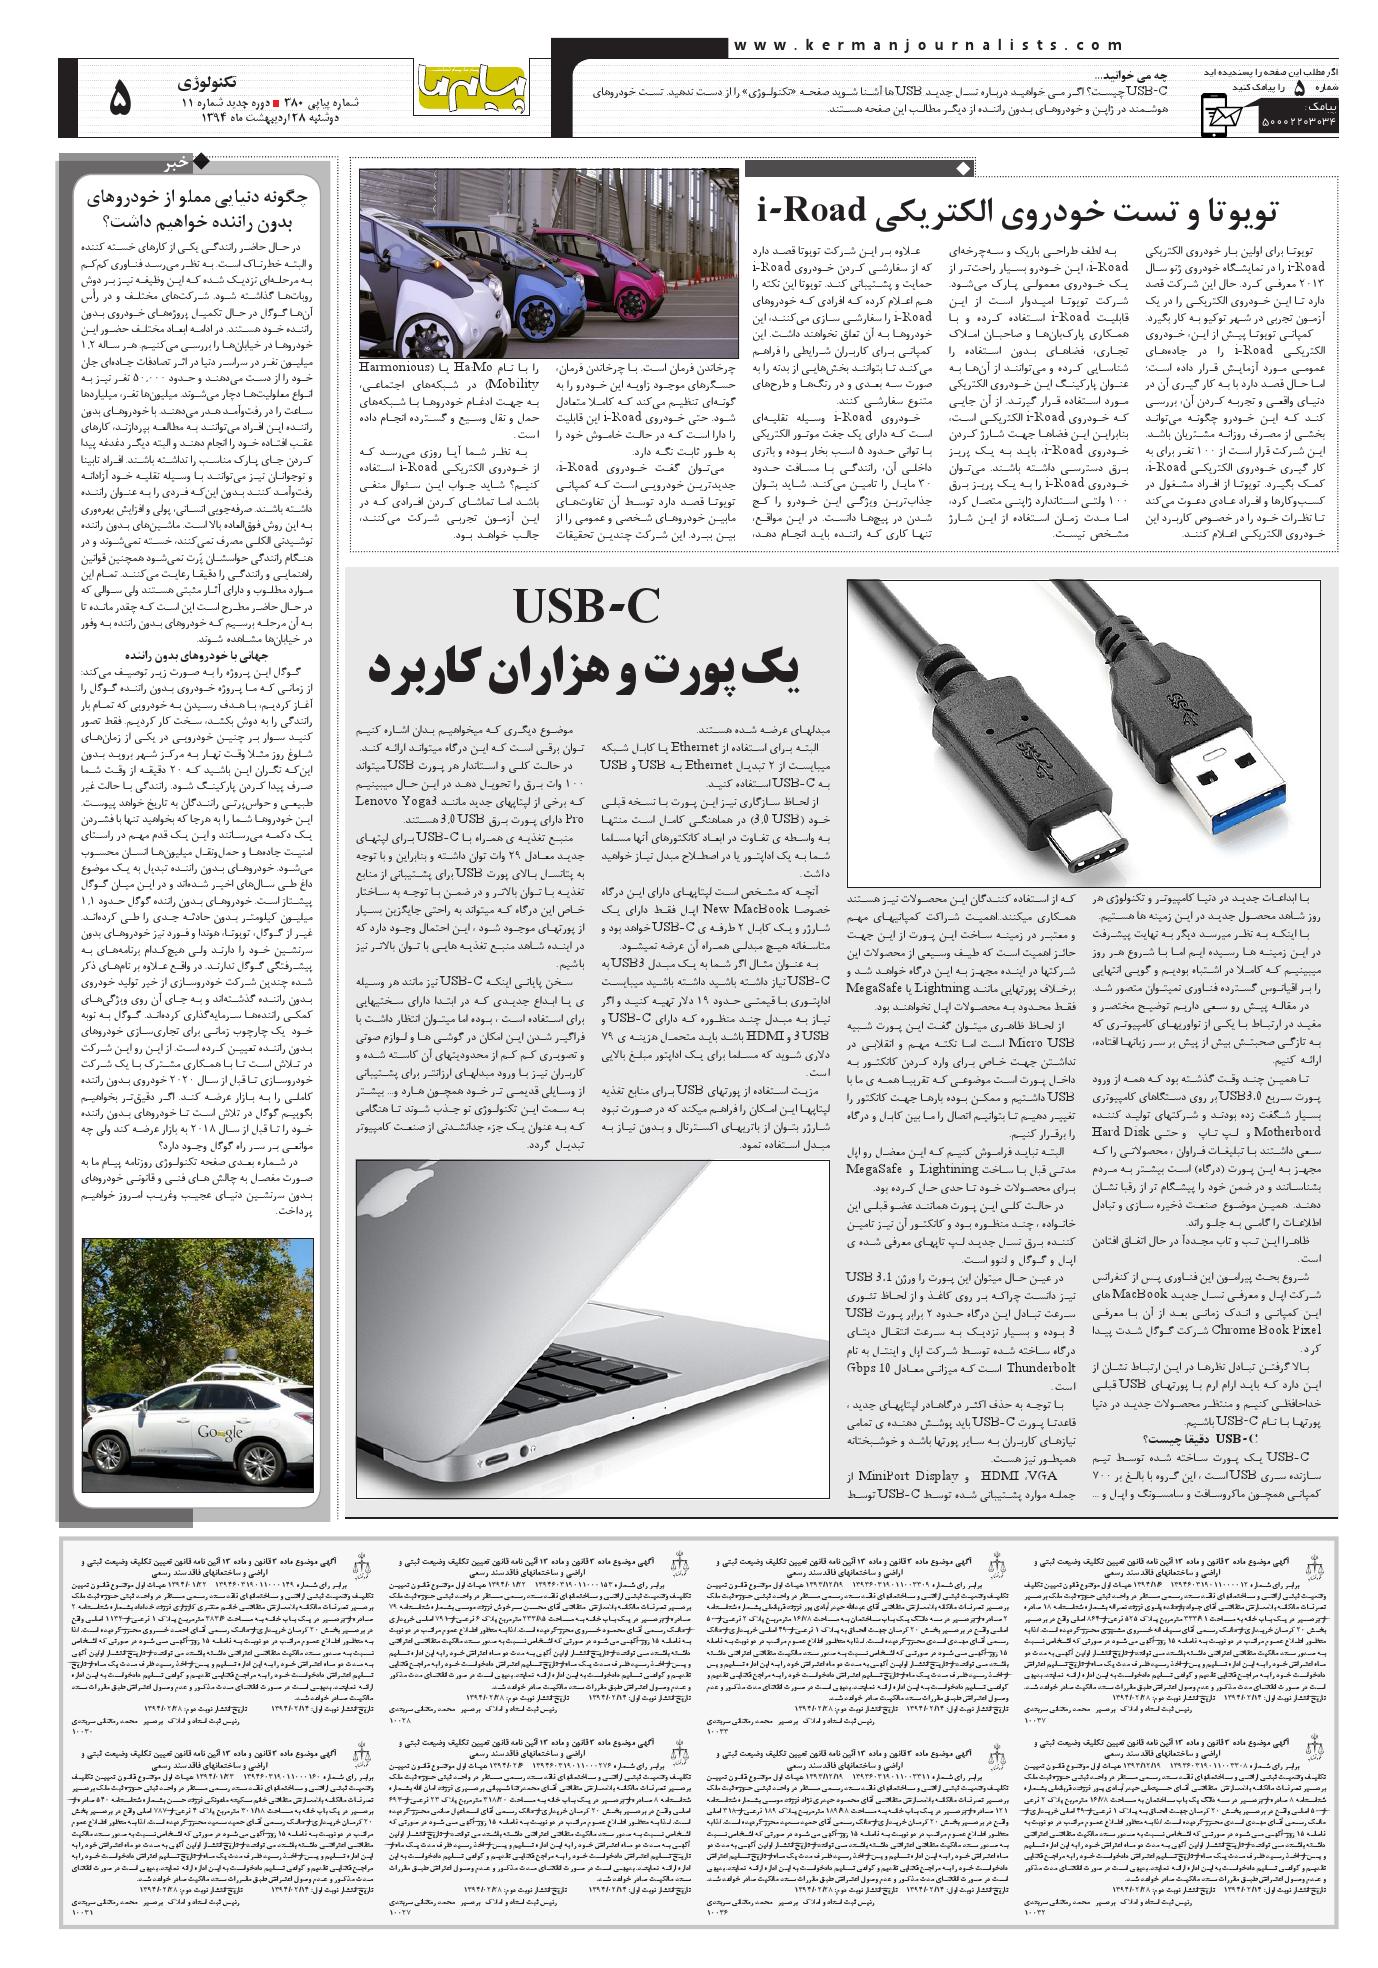 صفحه تکنولوژی شماره 380 روزنامه پیام ما